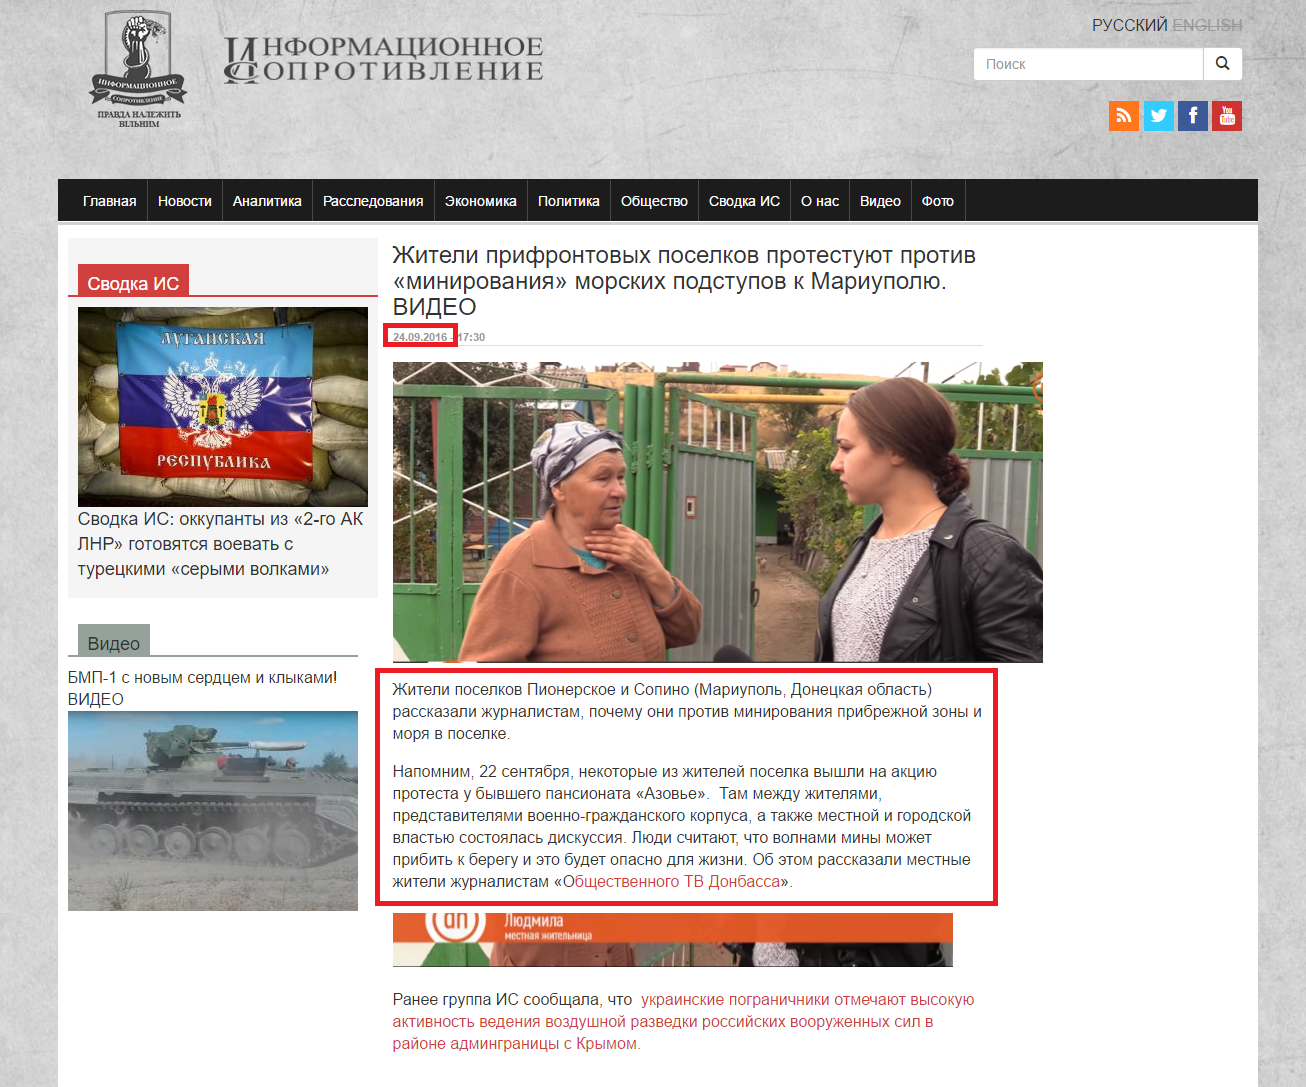 http://sprotyv.info/ru/news/kiev/zhiteli-prifrontovyh-poselkov-protestuyut-protiv-minirovaniya-morskih-podstupov-k